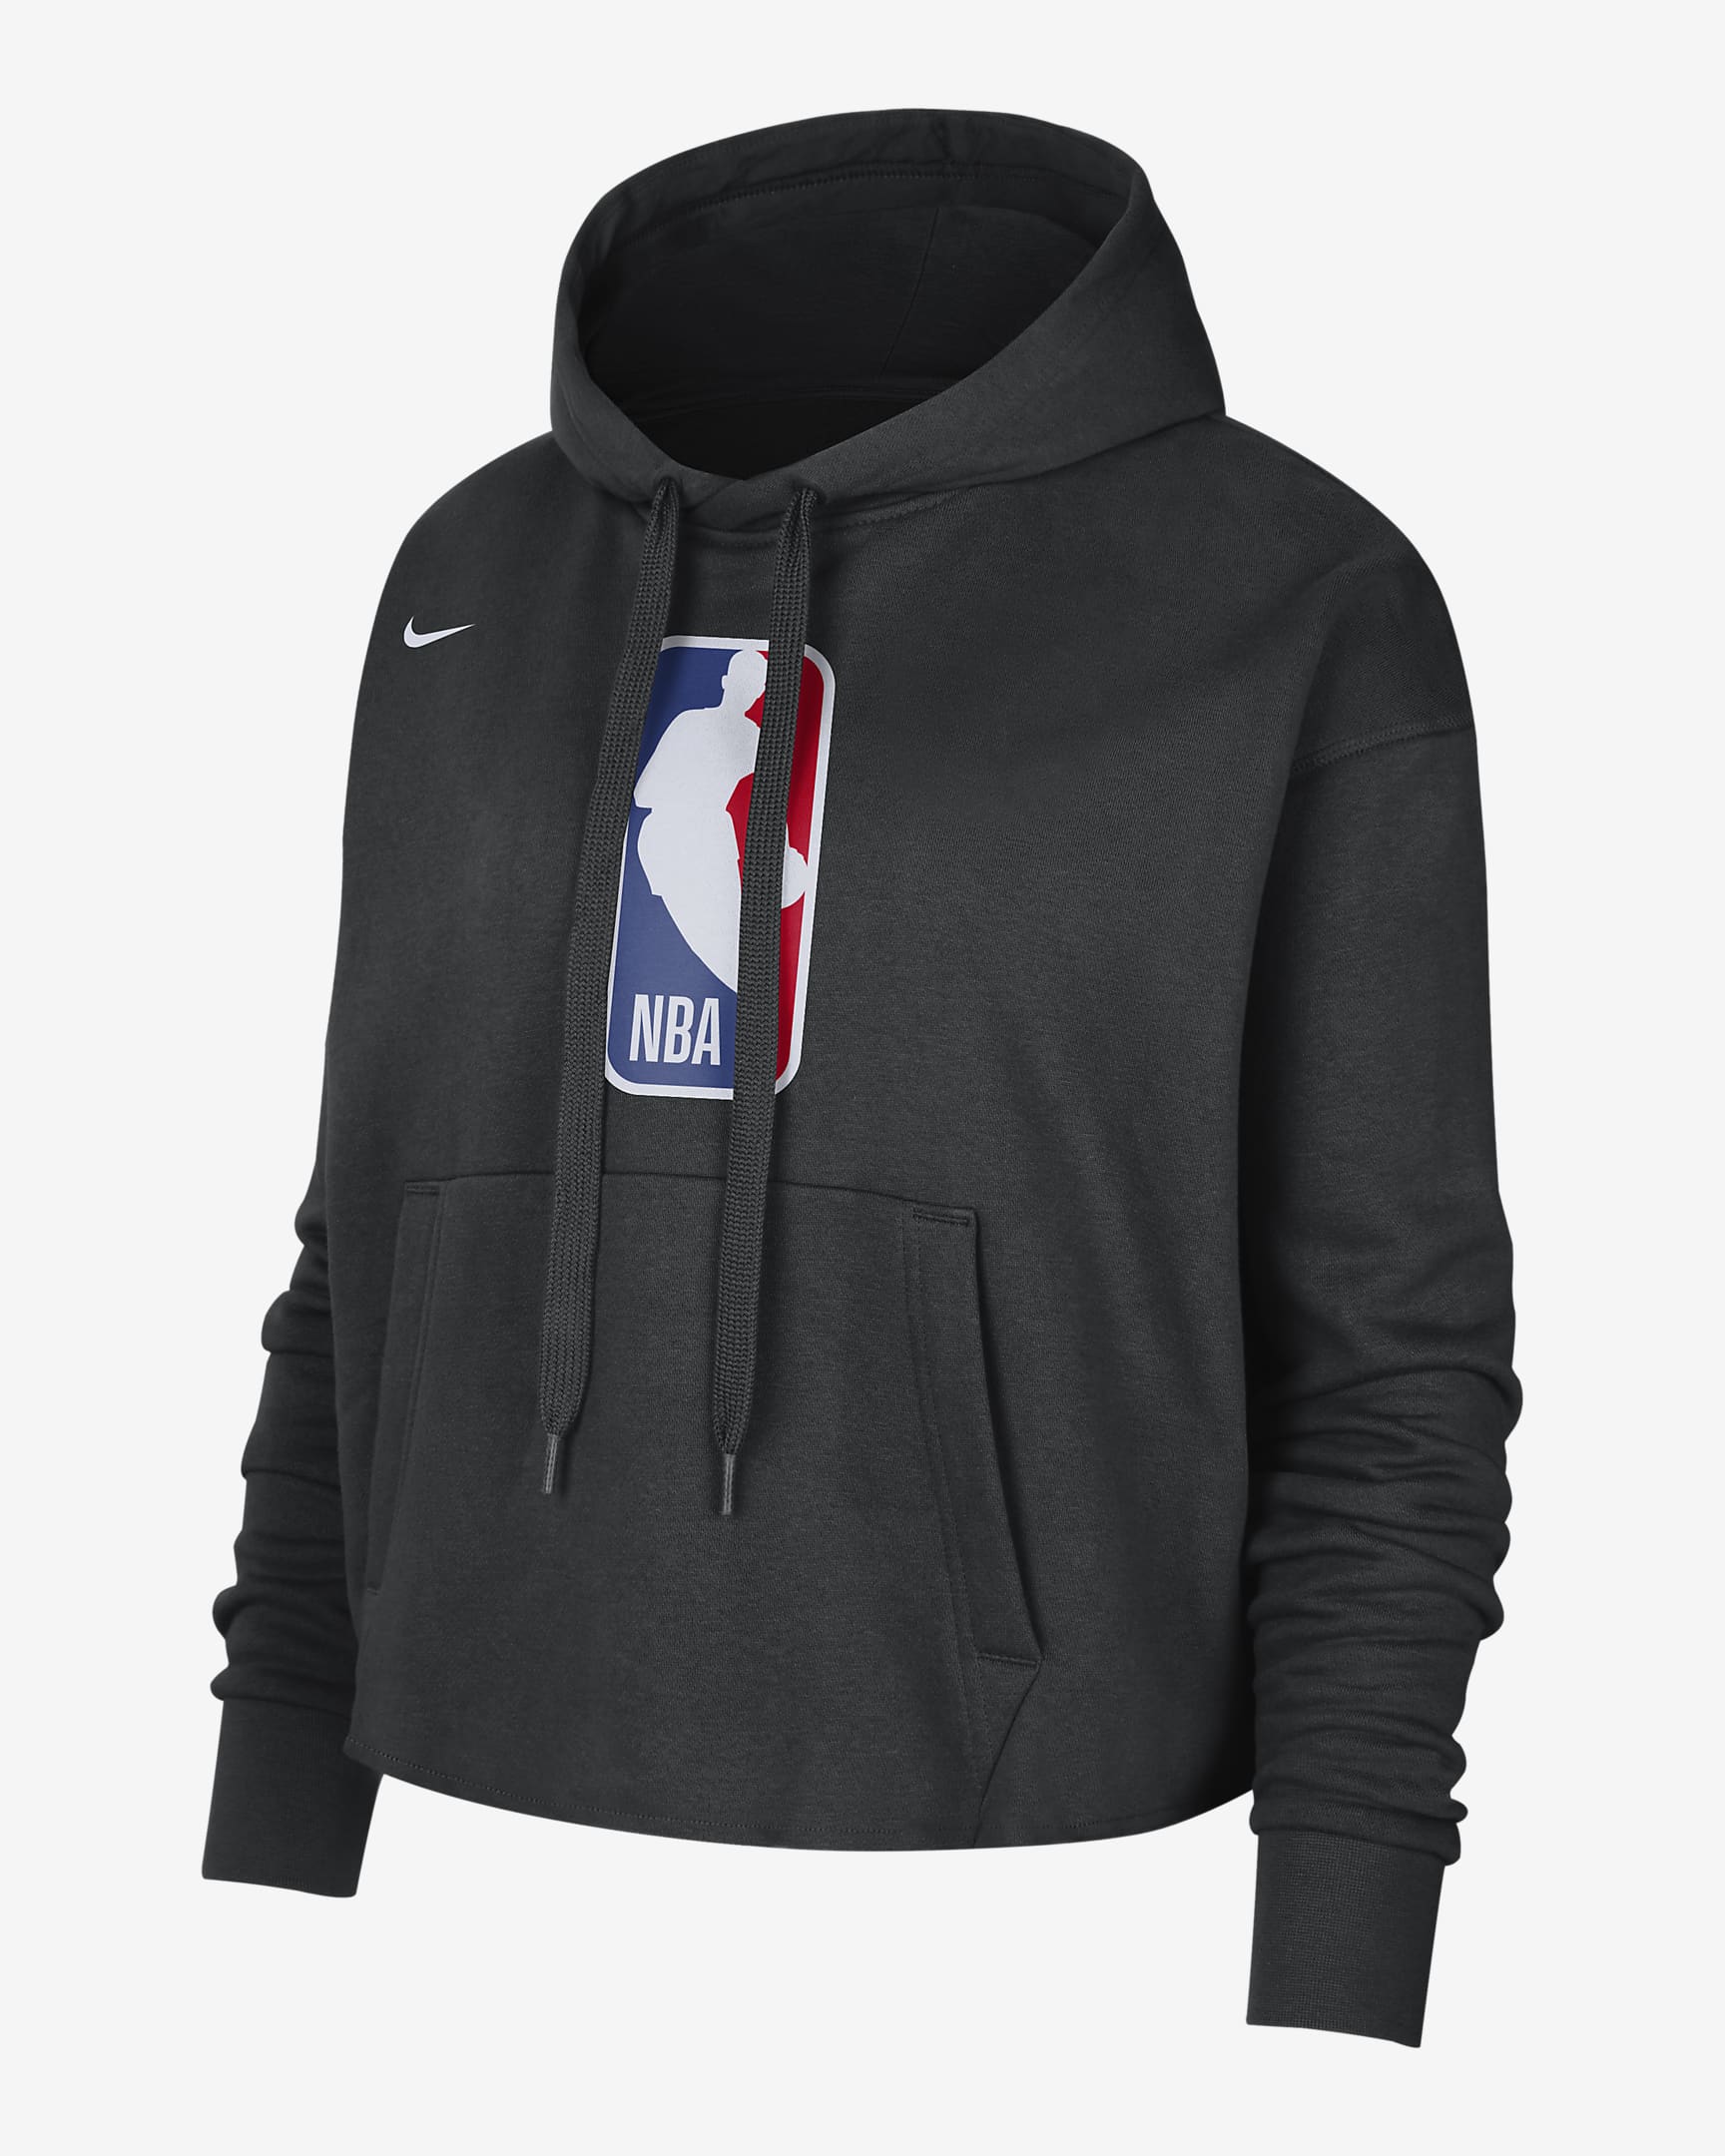 Dámská flísová mikina Team 31 Courtside Nike NBA s kapucí. Nike CZ